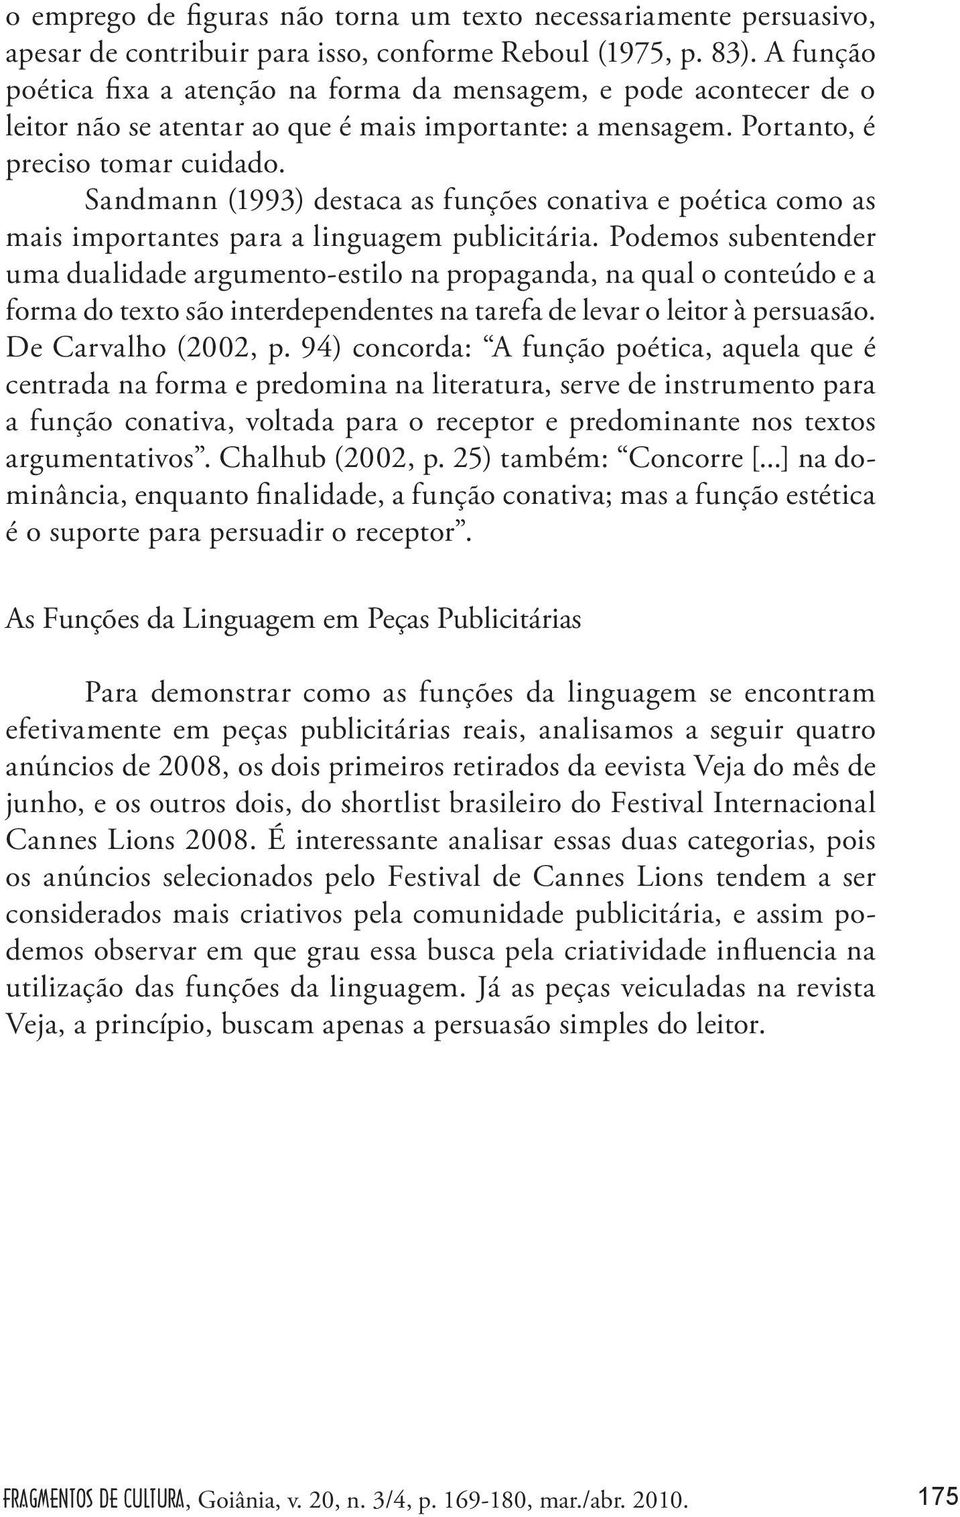 Sandmann (1993) destaca as funções conativa e poética como as mais importantes para a linguagem publicitária.